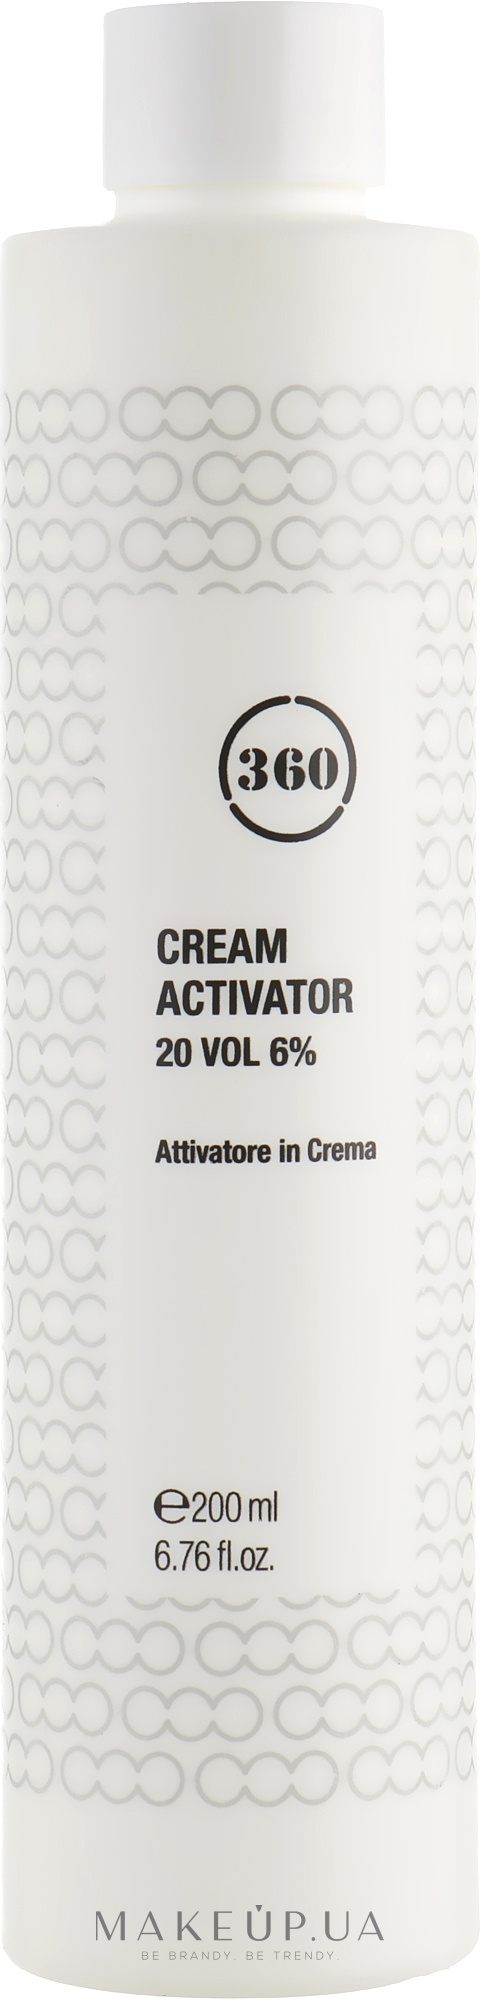 Крем-активатор 20 - 360 Cream Activator 20 Vol 6% — фото 200ml